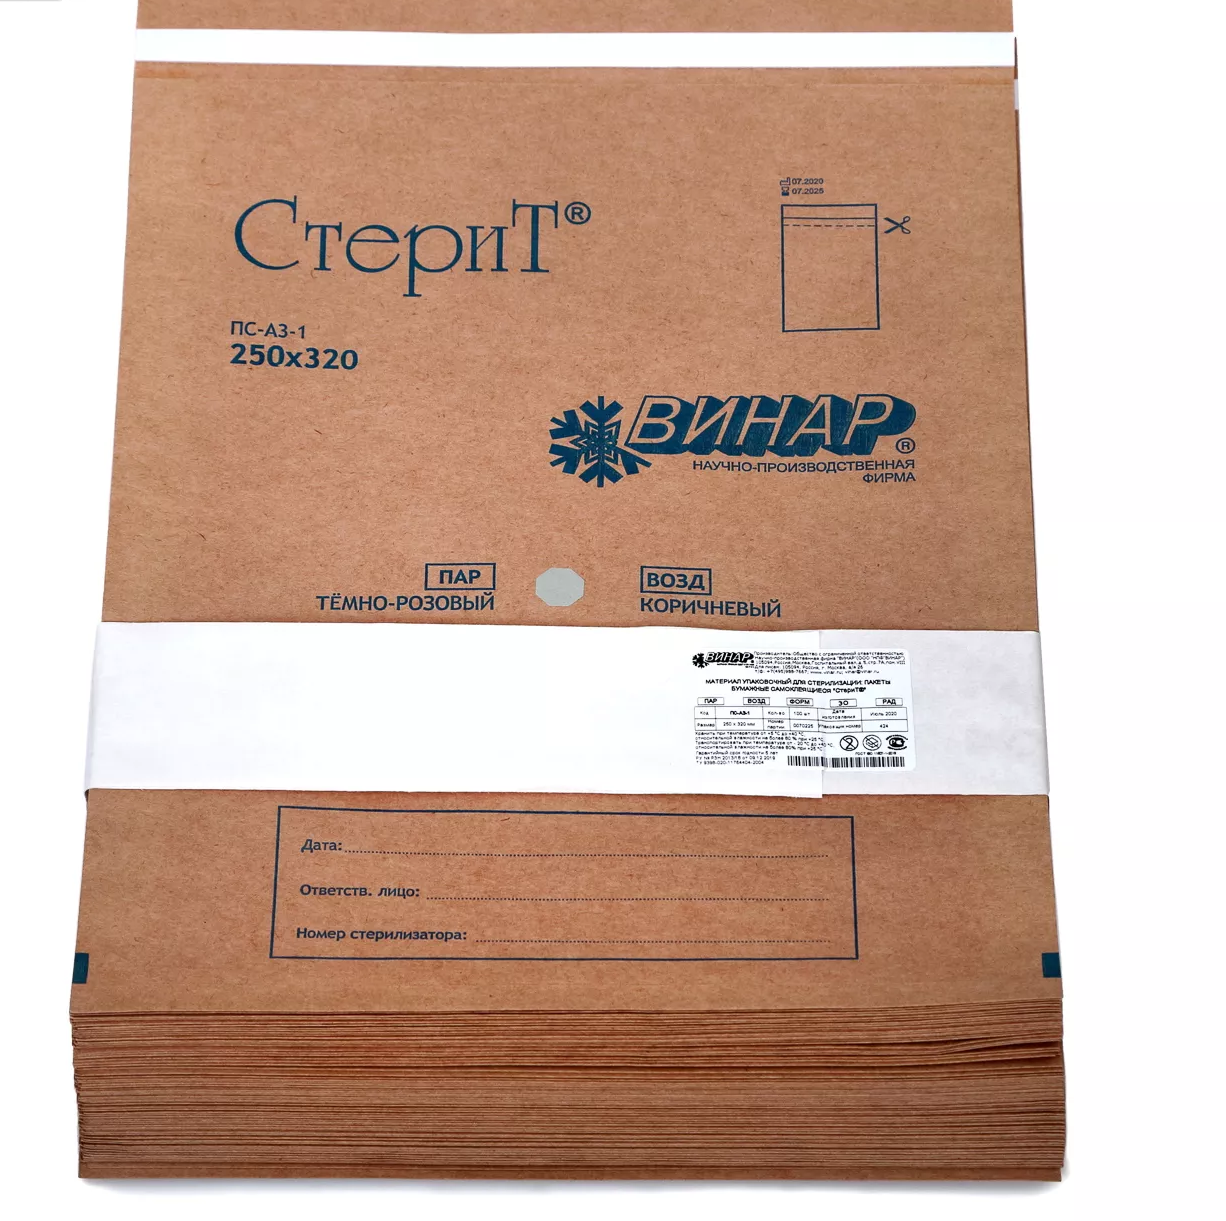 Пакет СтериТ, размер 250*320мм, бумажный, крафт, самоклеющийся, упаковка 100шт